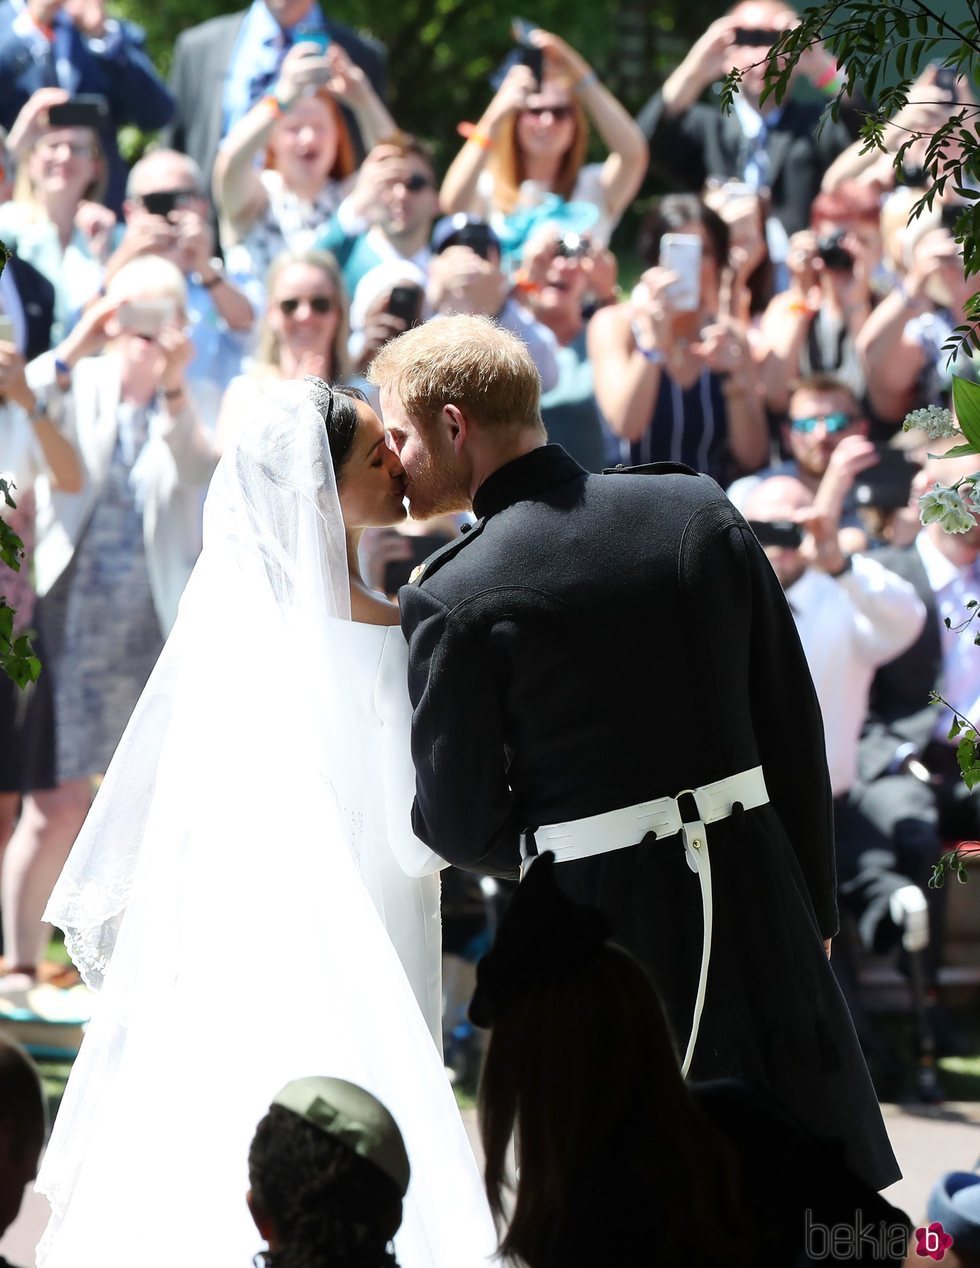 Preciosa foto del Príncipe Harry y Meghan Markle besándose con el público de fondo